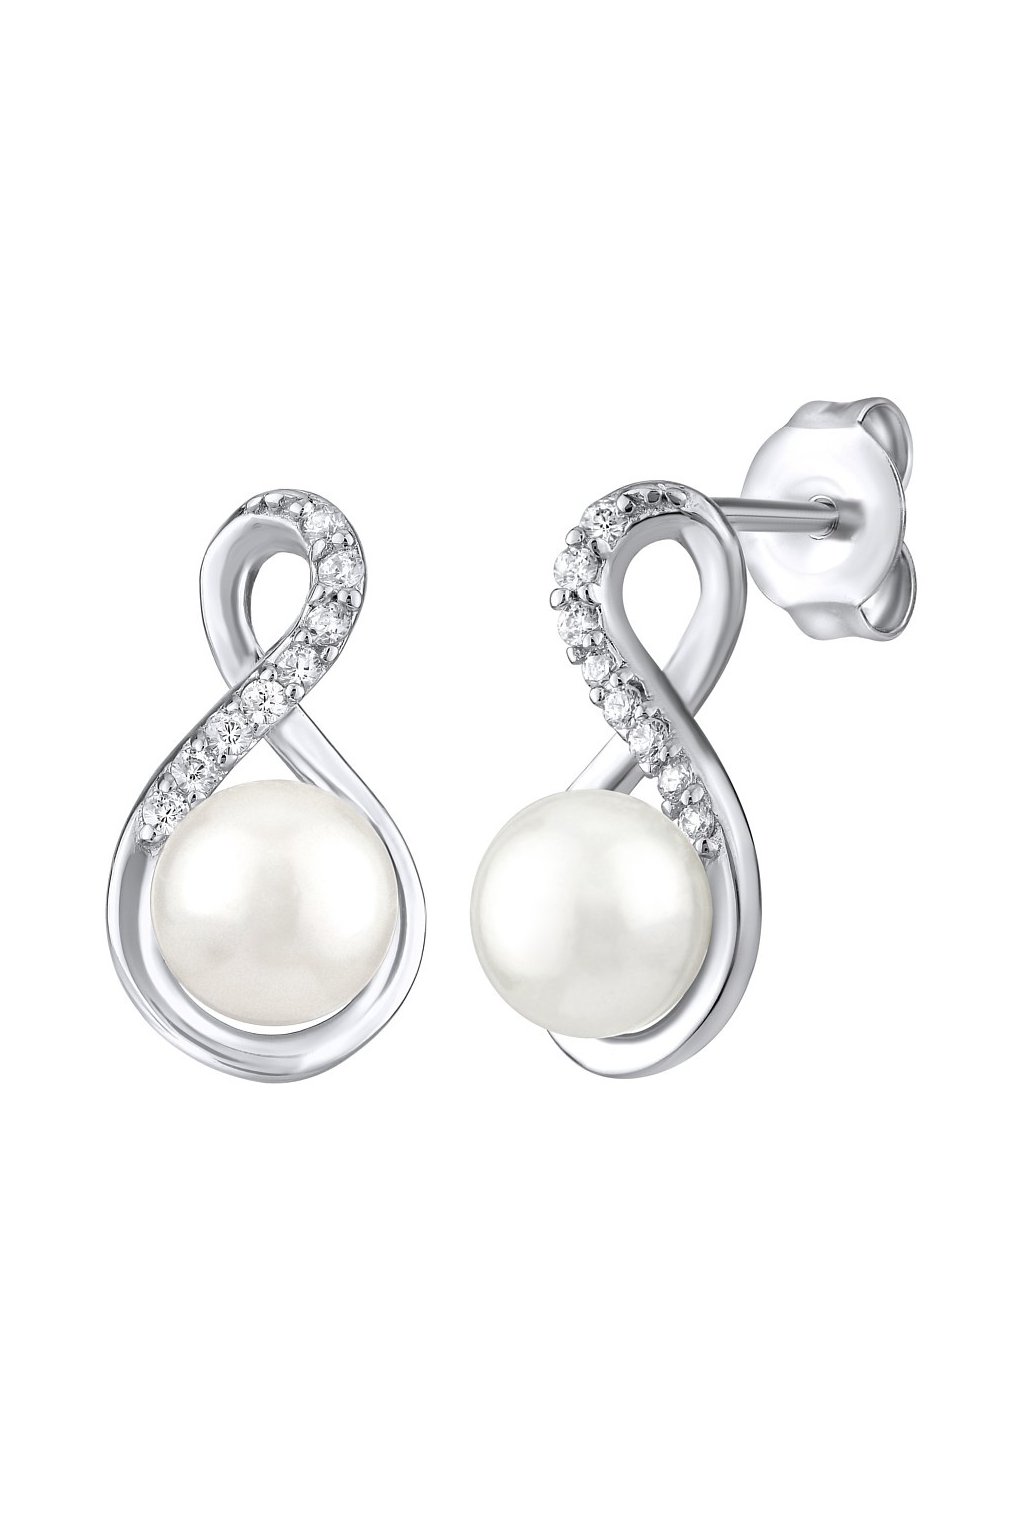 Strieborné náušnice s bielou prírodnou perlou